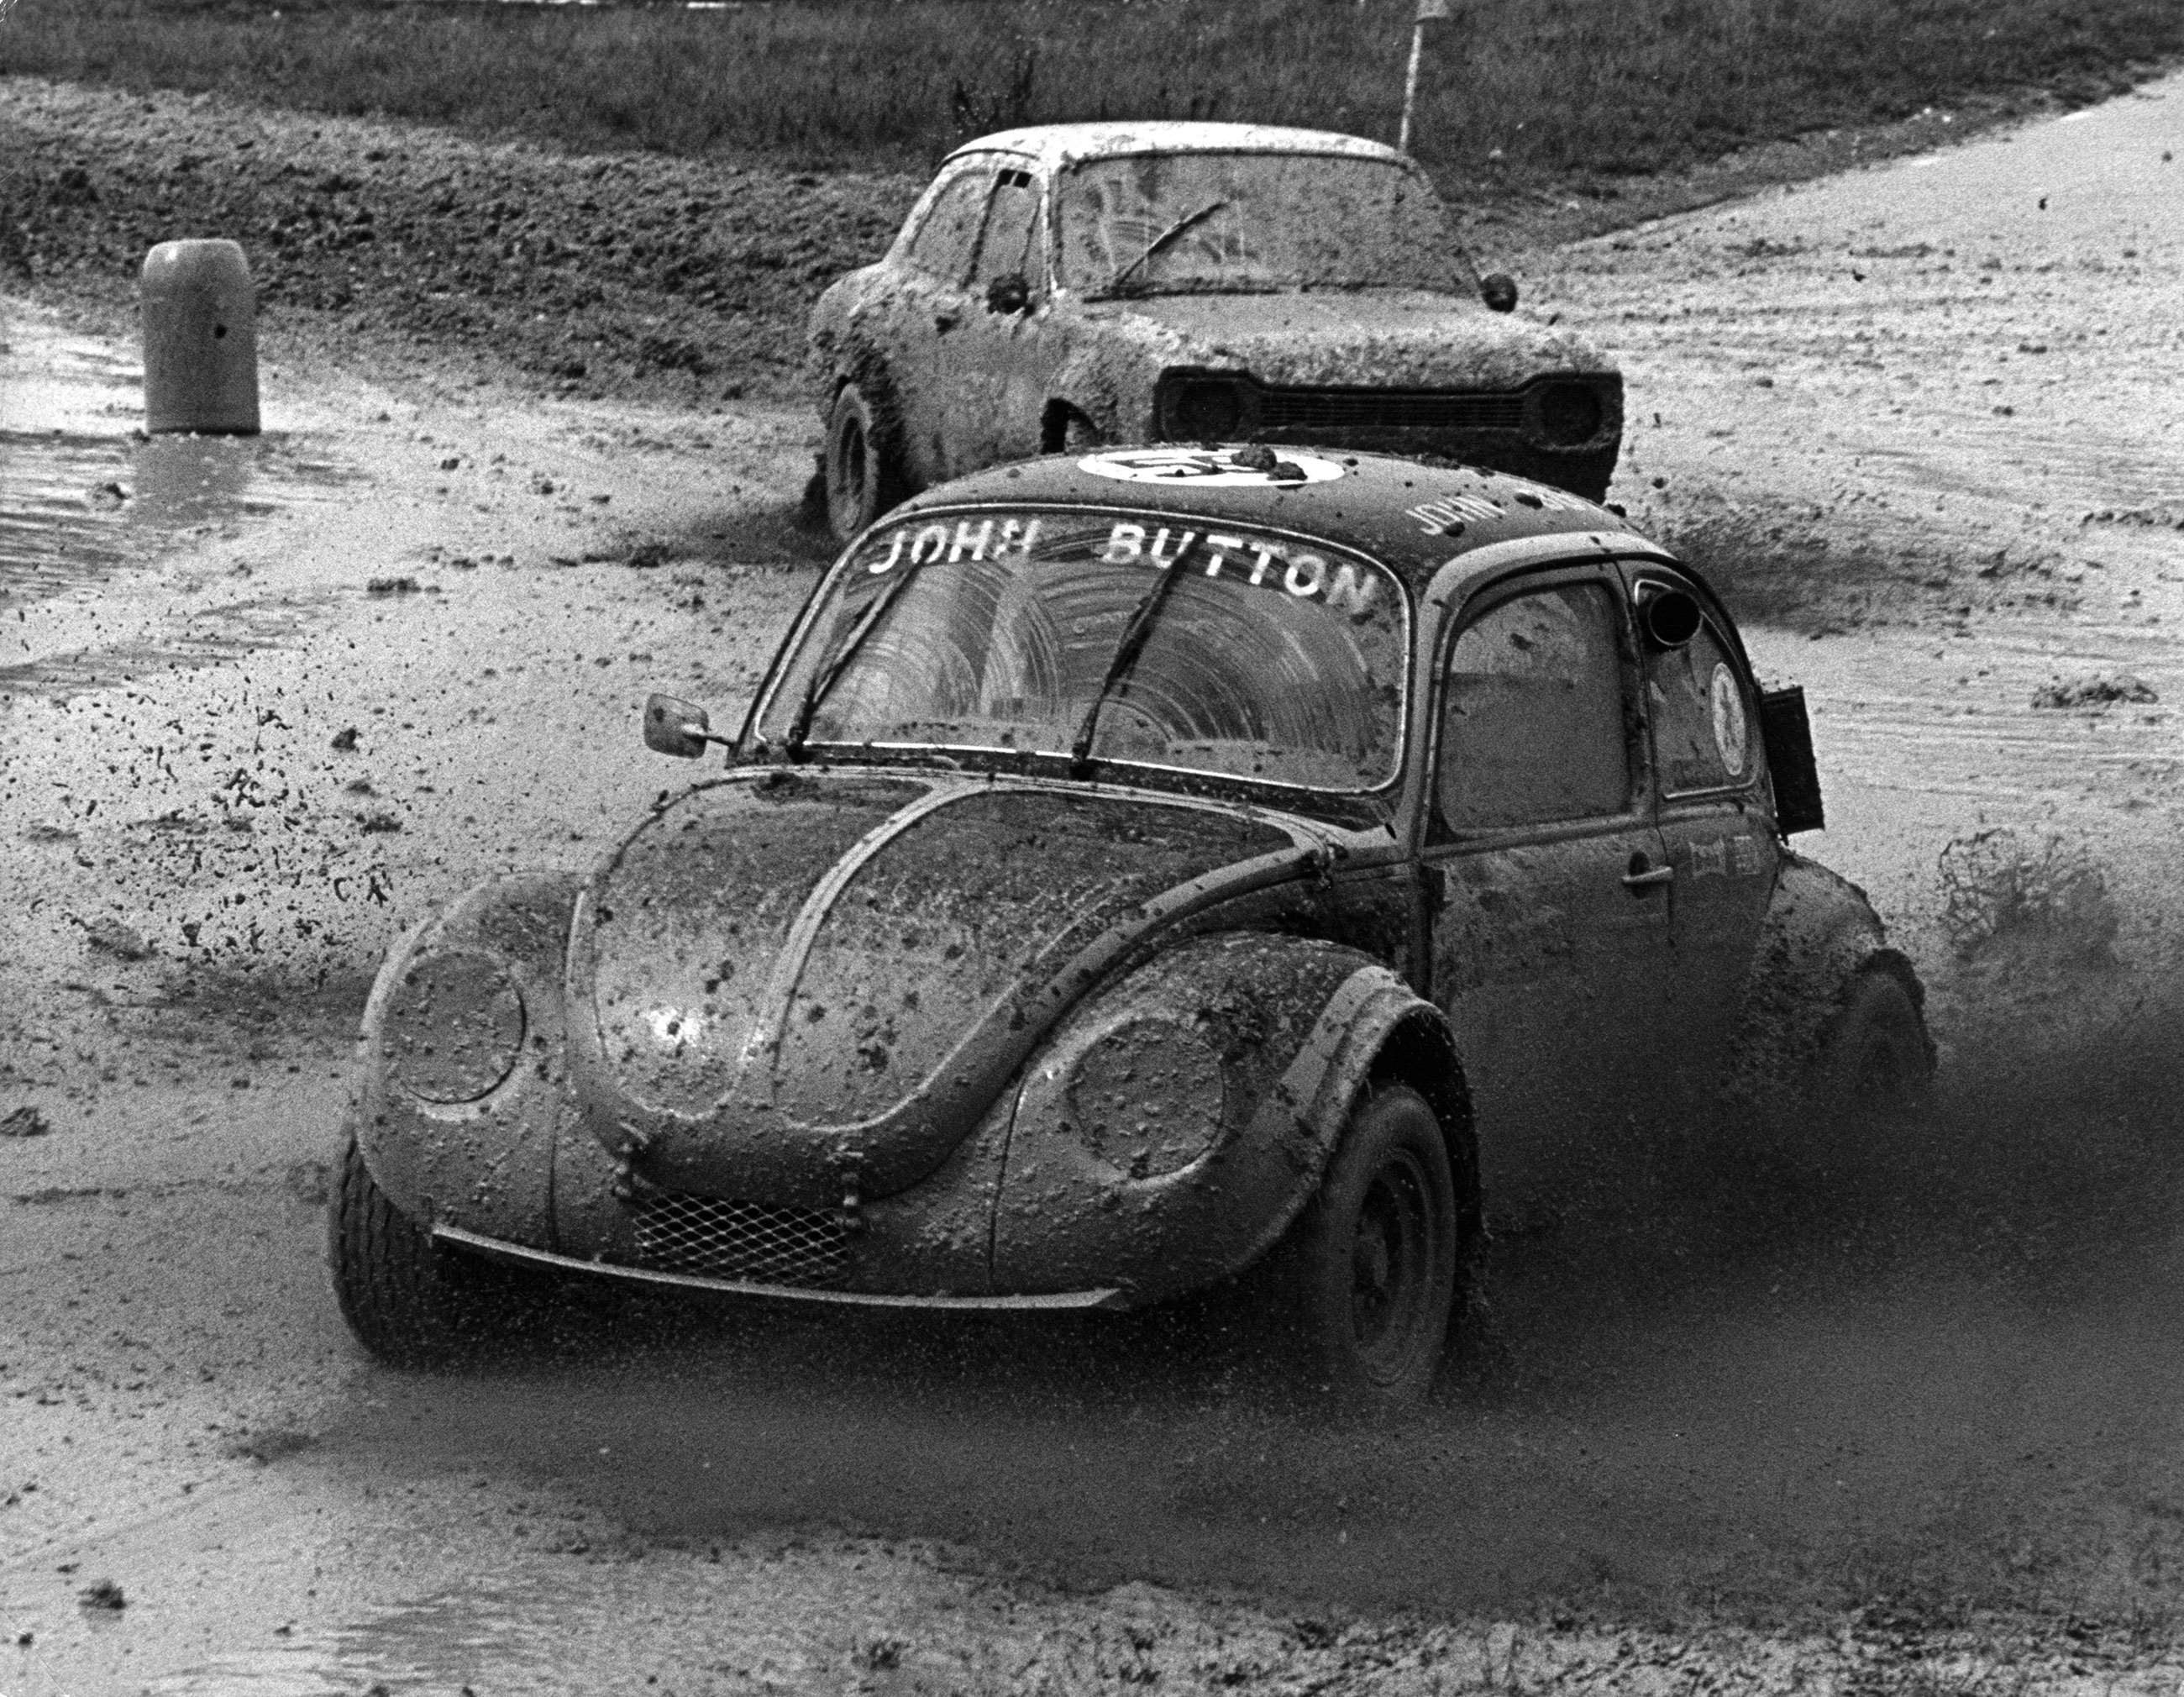 best-british-circuits-that-arent-goodwood-4-lydden-hill-1976-john-button-rallycross-mi-goodwood-30072020.jpg